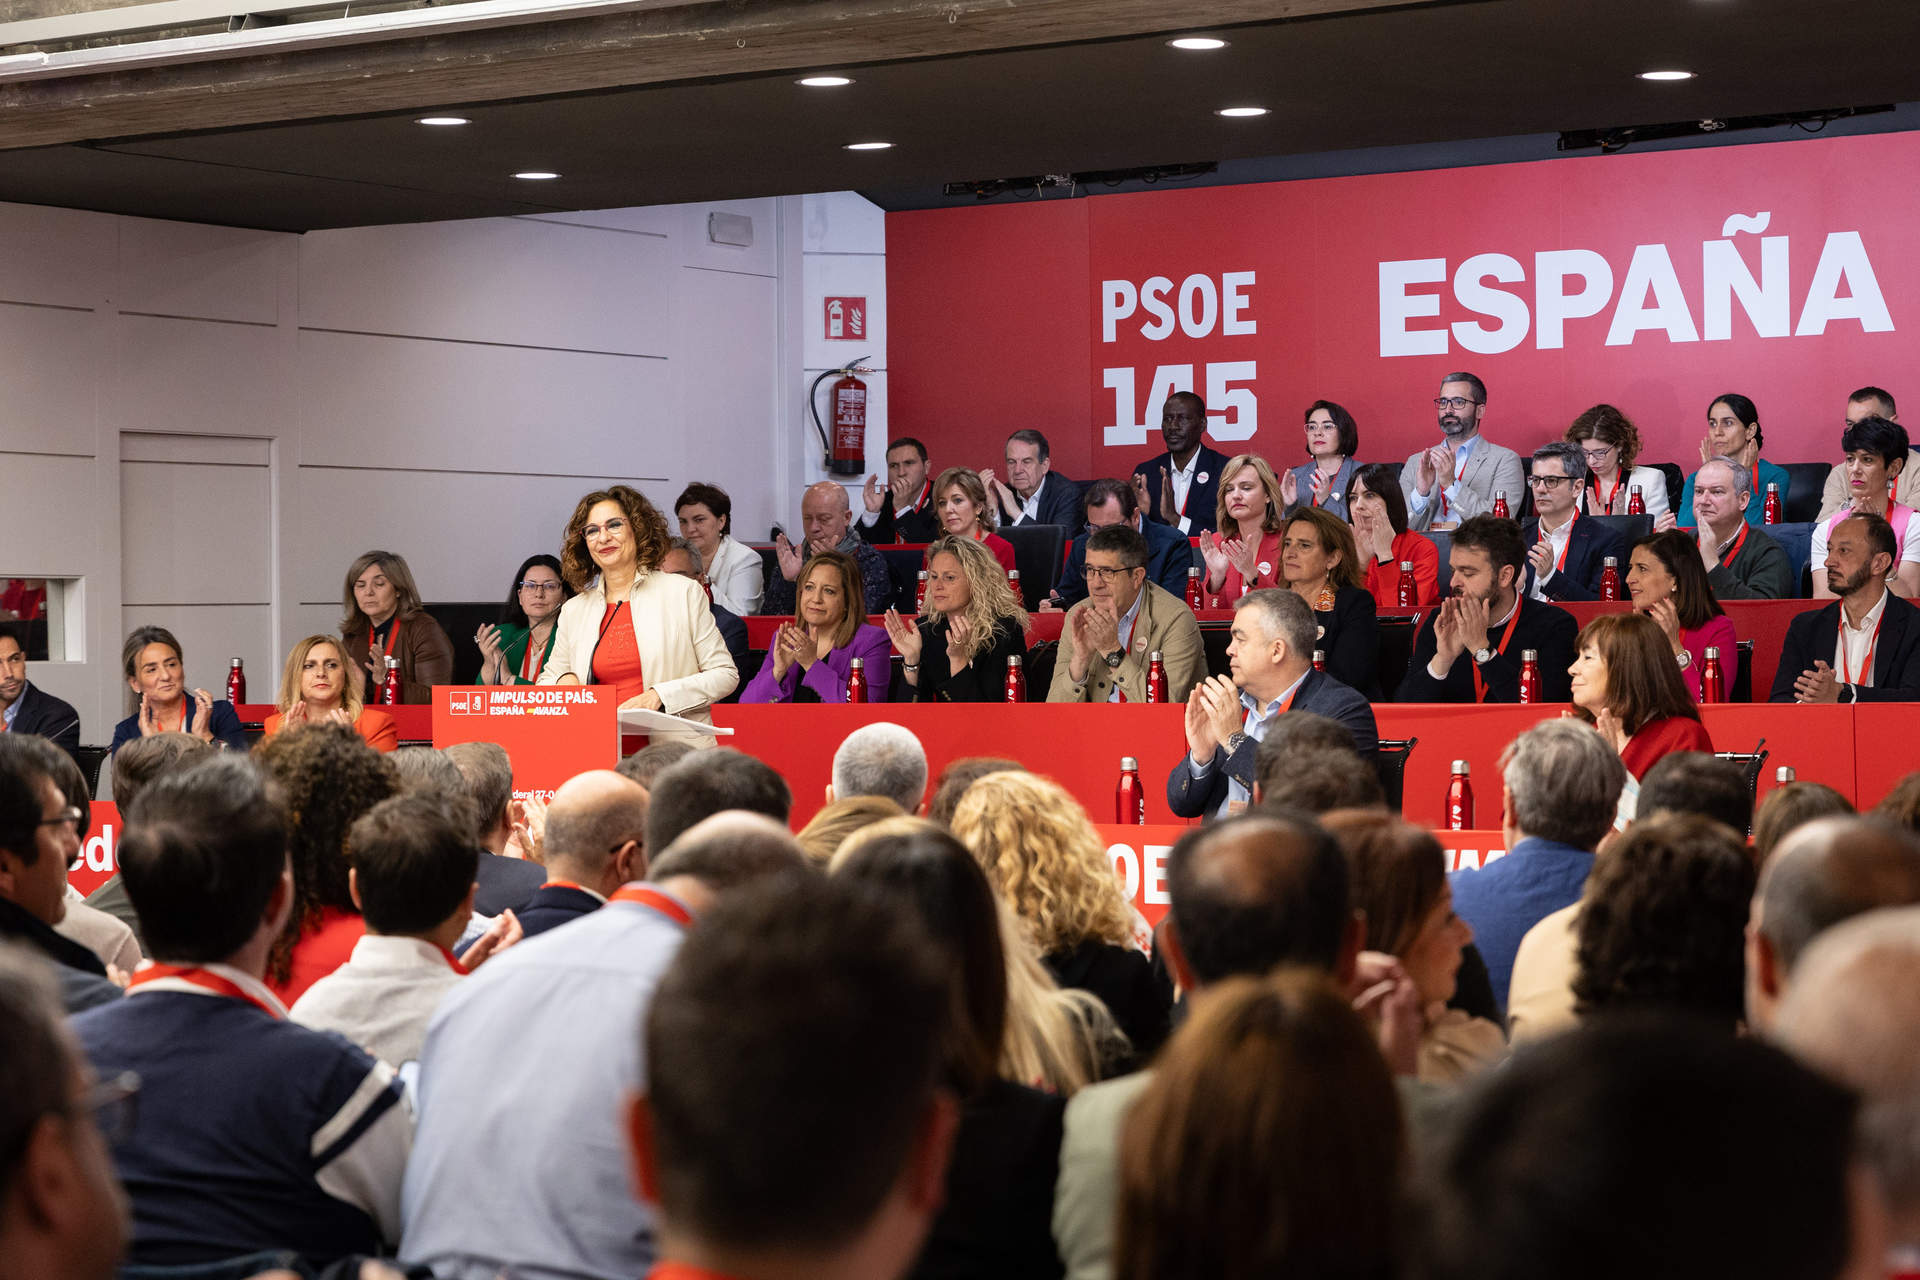 Pedro Sánchez castigó al PSOE con el silencio por no haber defendido a Begoña Gómez